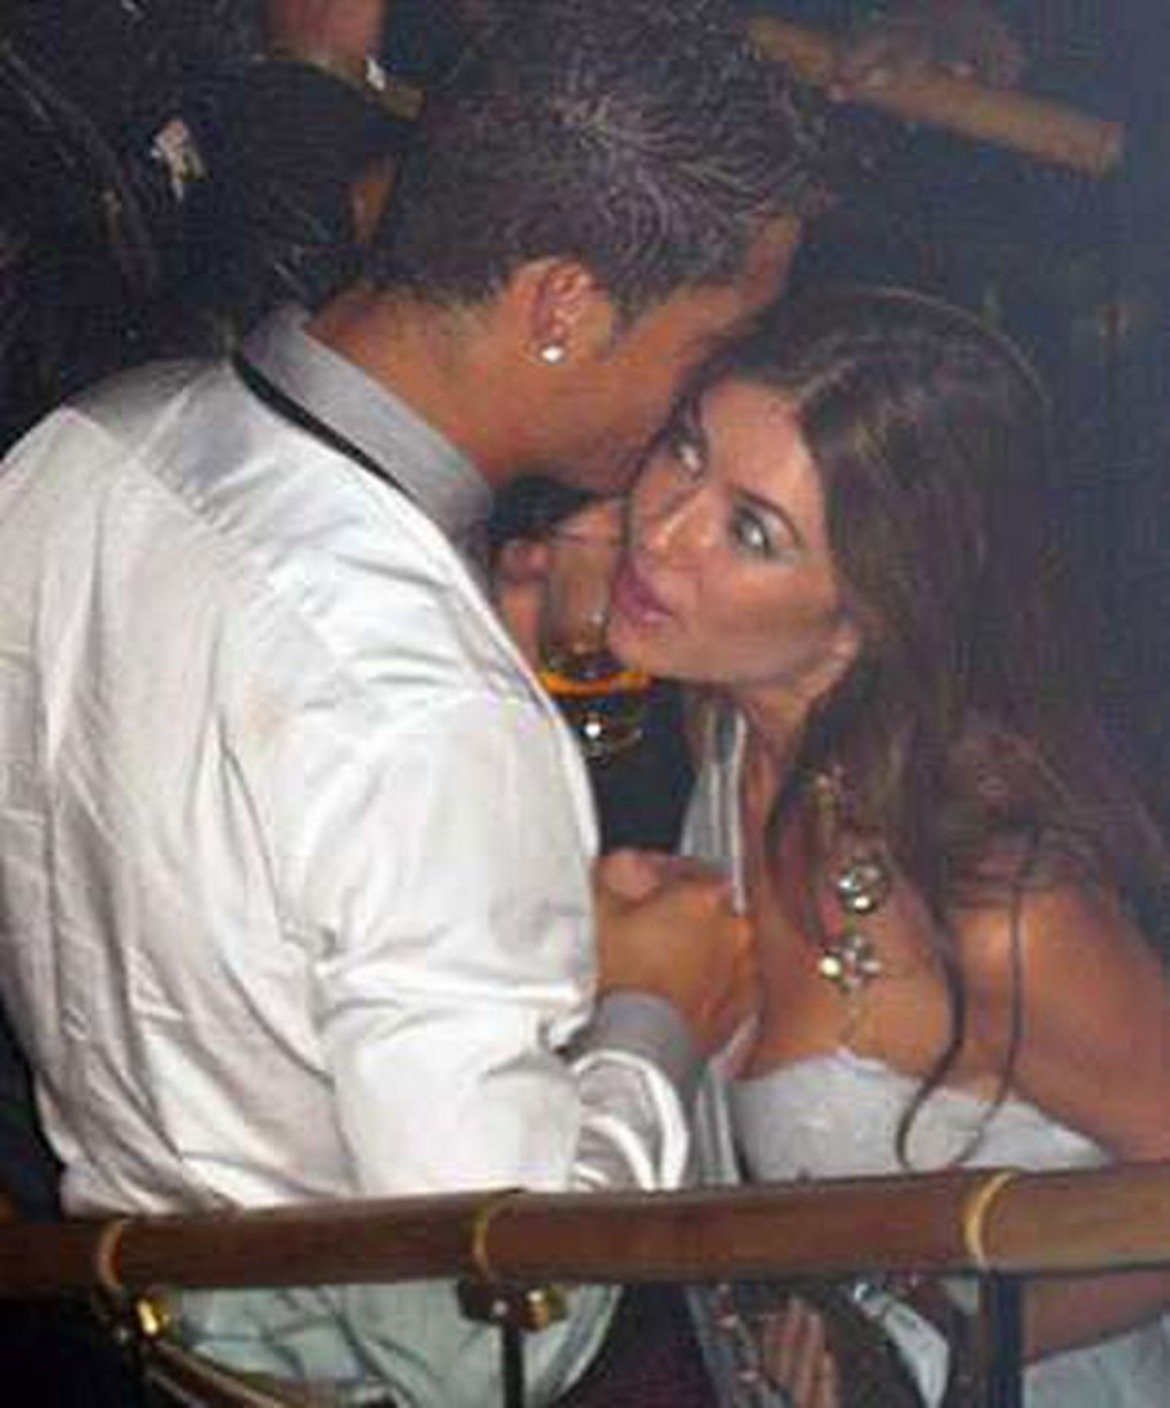 Роналдо е обвинен в изнасилване на Майорга през 2009 година в хотел в Лас Вегас дни преди трансфера си от Манчестър Юнайтед в Реал Мадрид.

